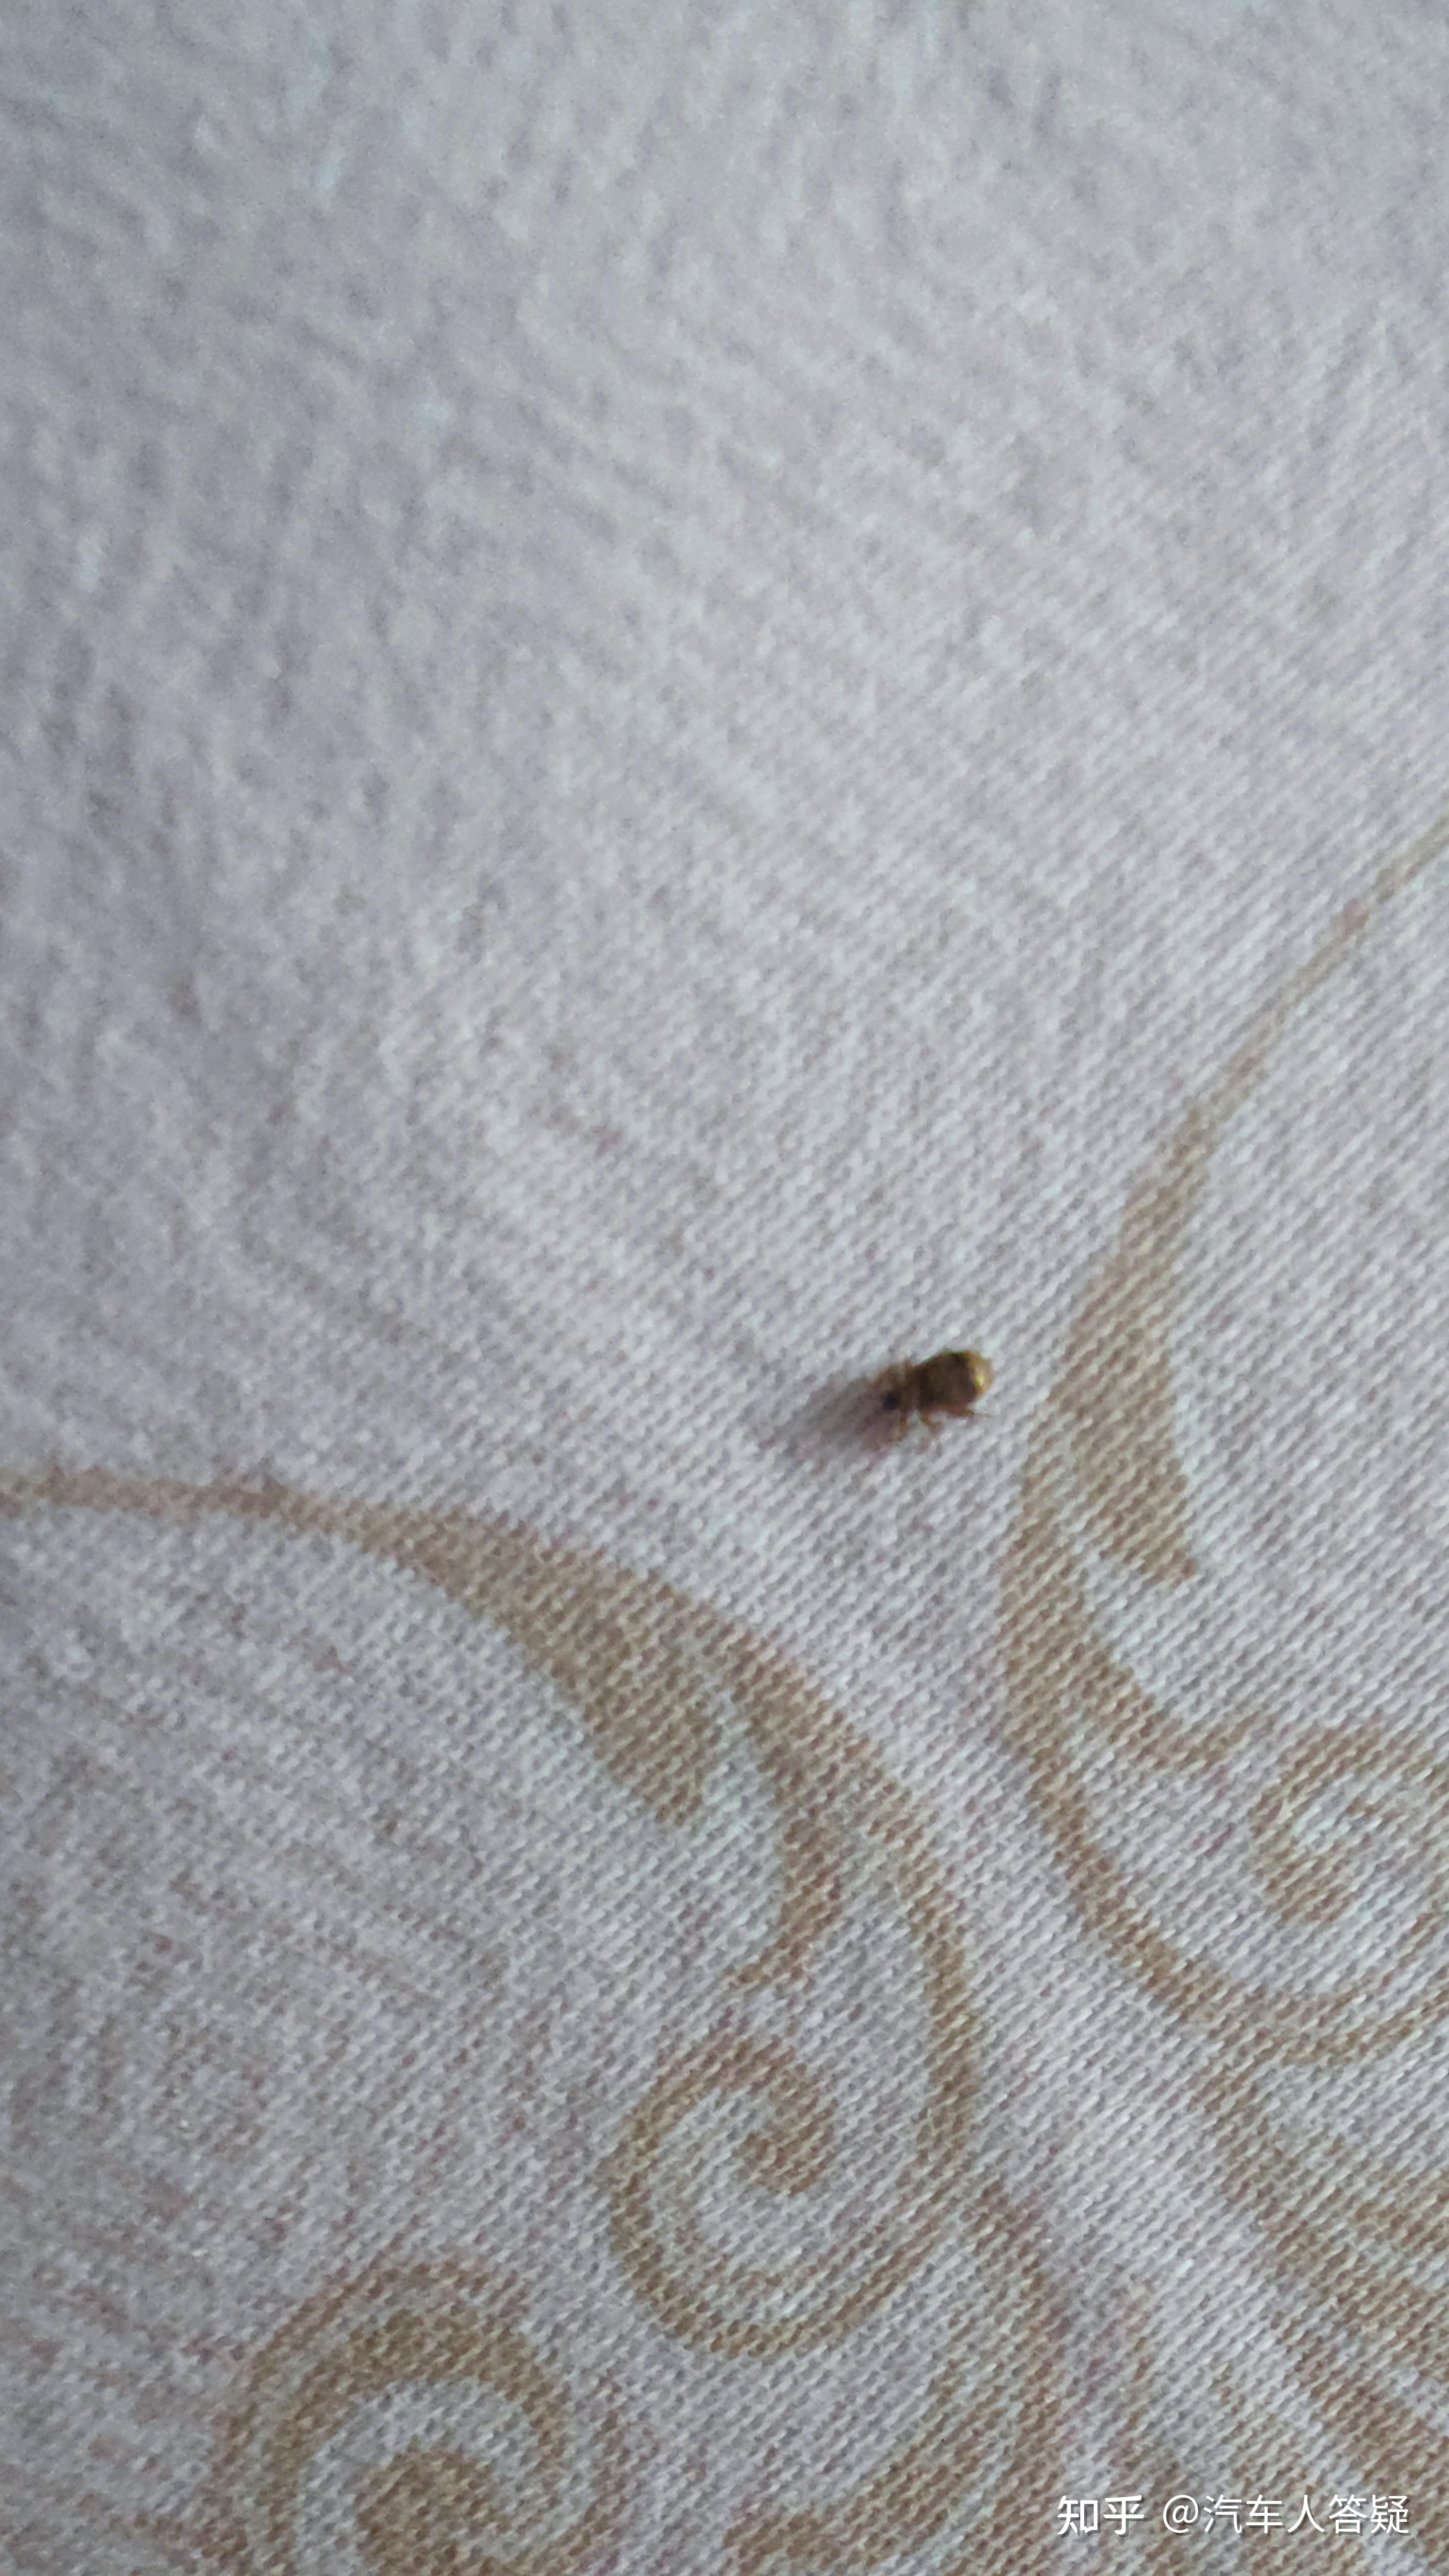 家里刚生了孩子在床上发现这个虫子请问是什么